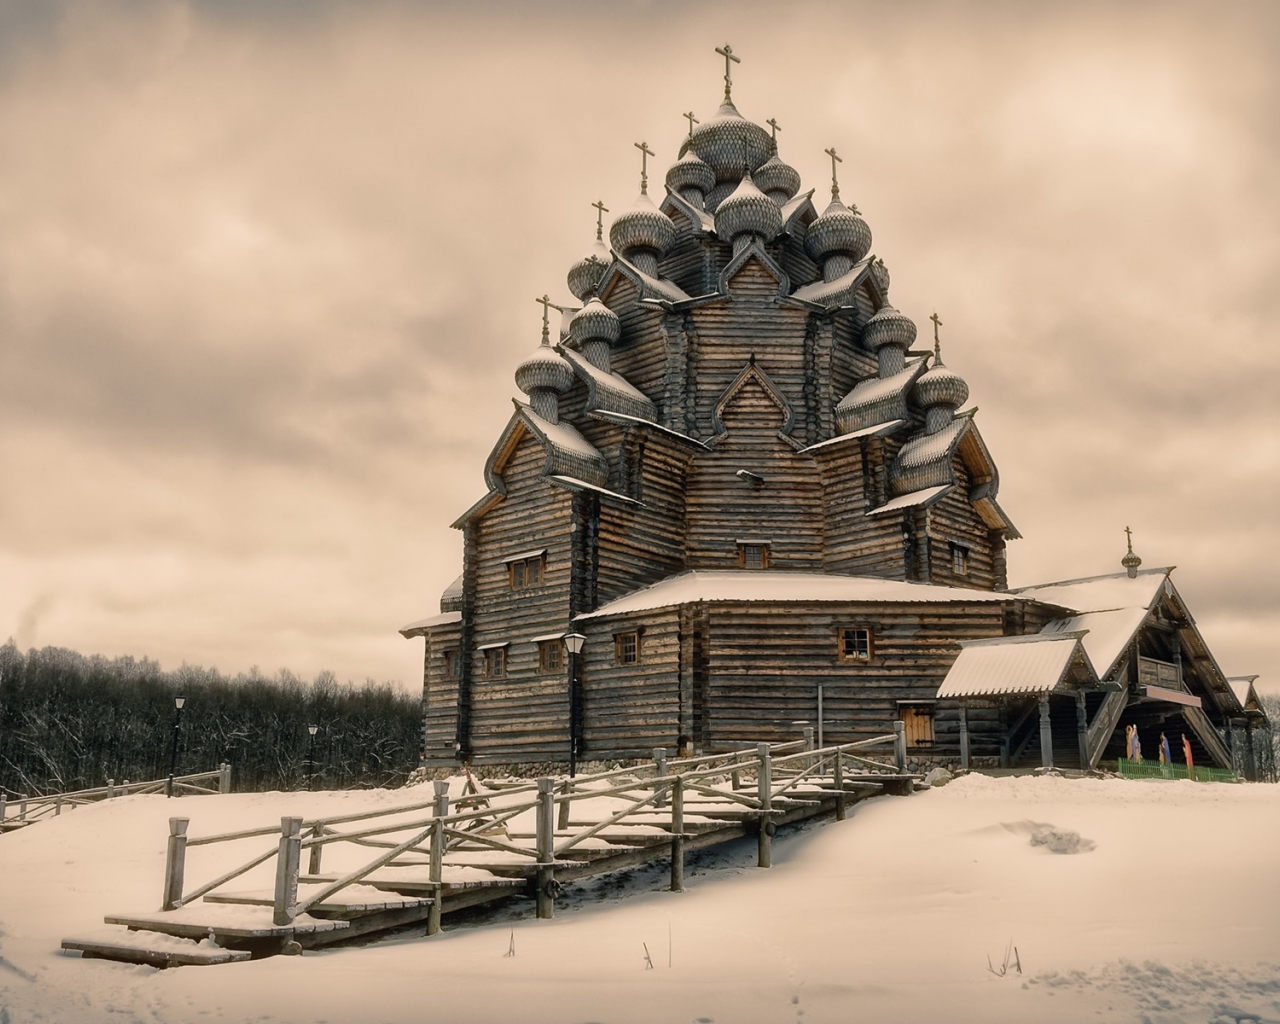 pokrovskaya church, leningrad oblast, russia, winter, snow